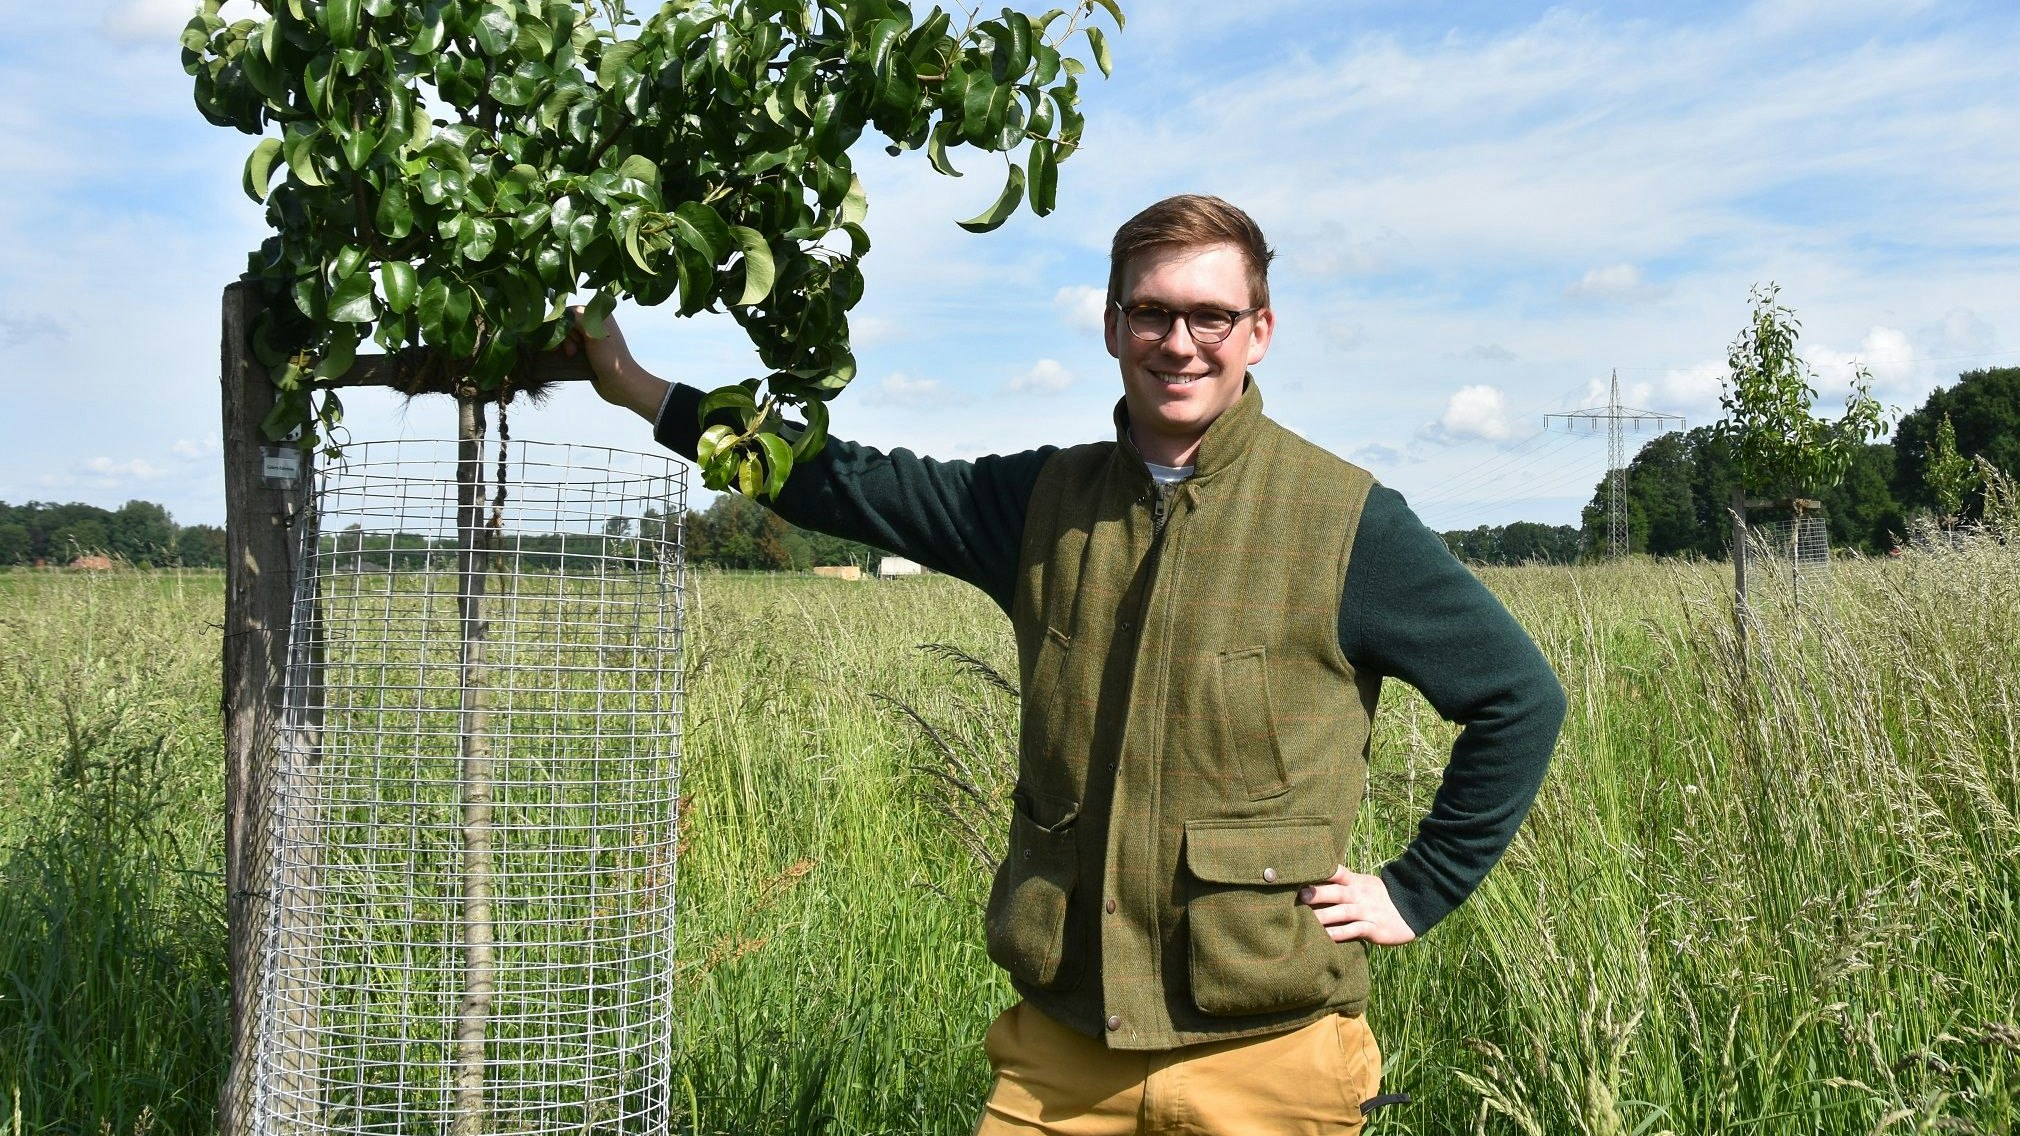 Stolz auf seine Birnbäume: Joost Böckmann (27) aus Deindrup. „Das Interesse an der Agroforstwirtschaft in der Region steigt“, sagt er. Foto: Tzimurtas